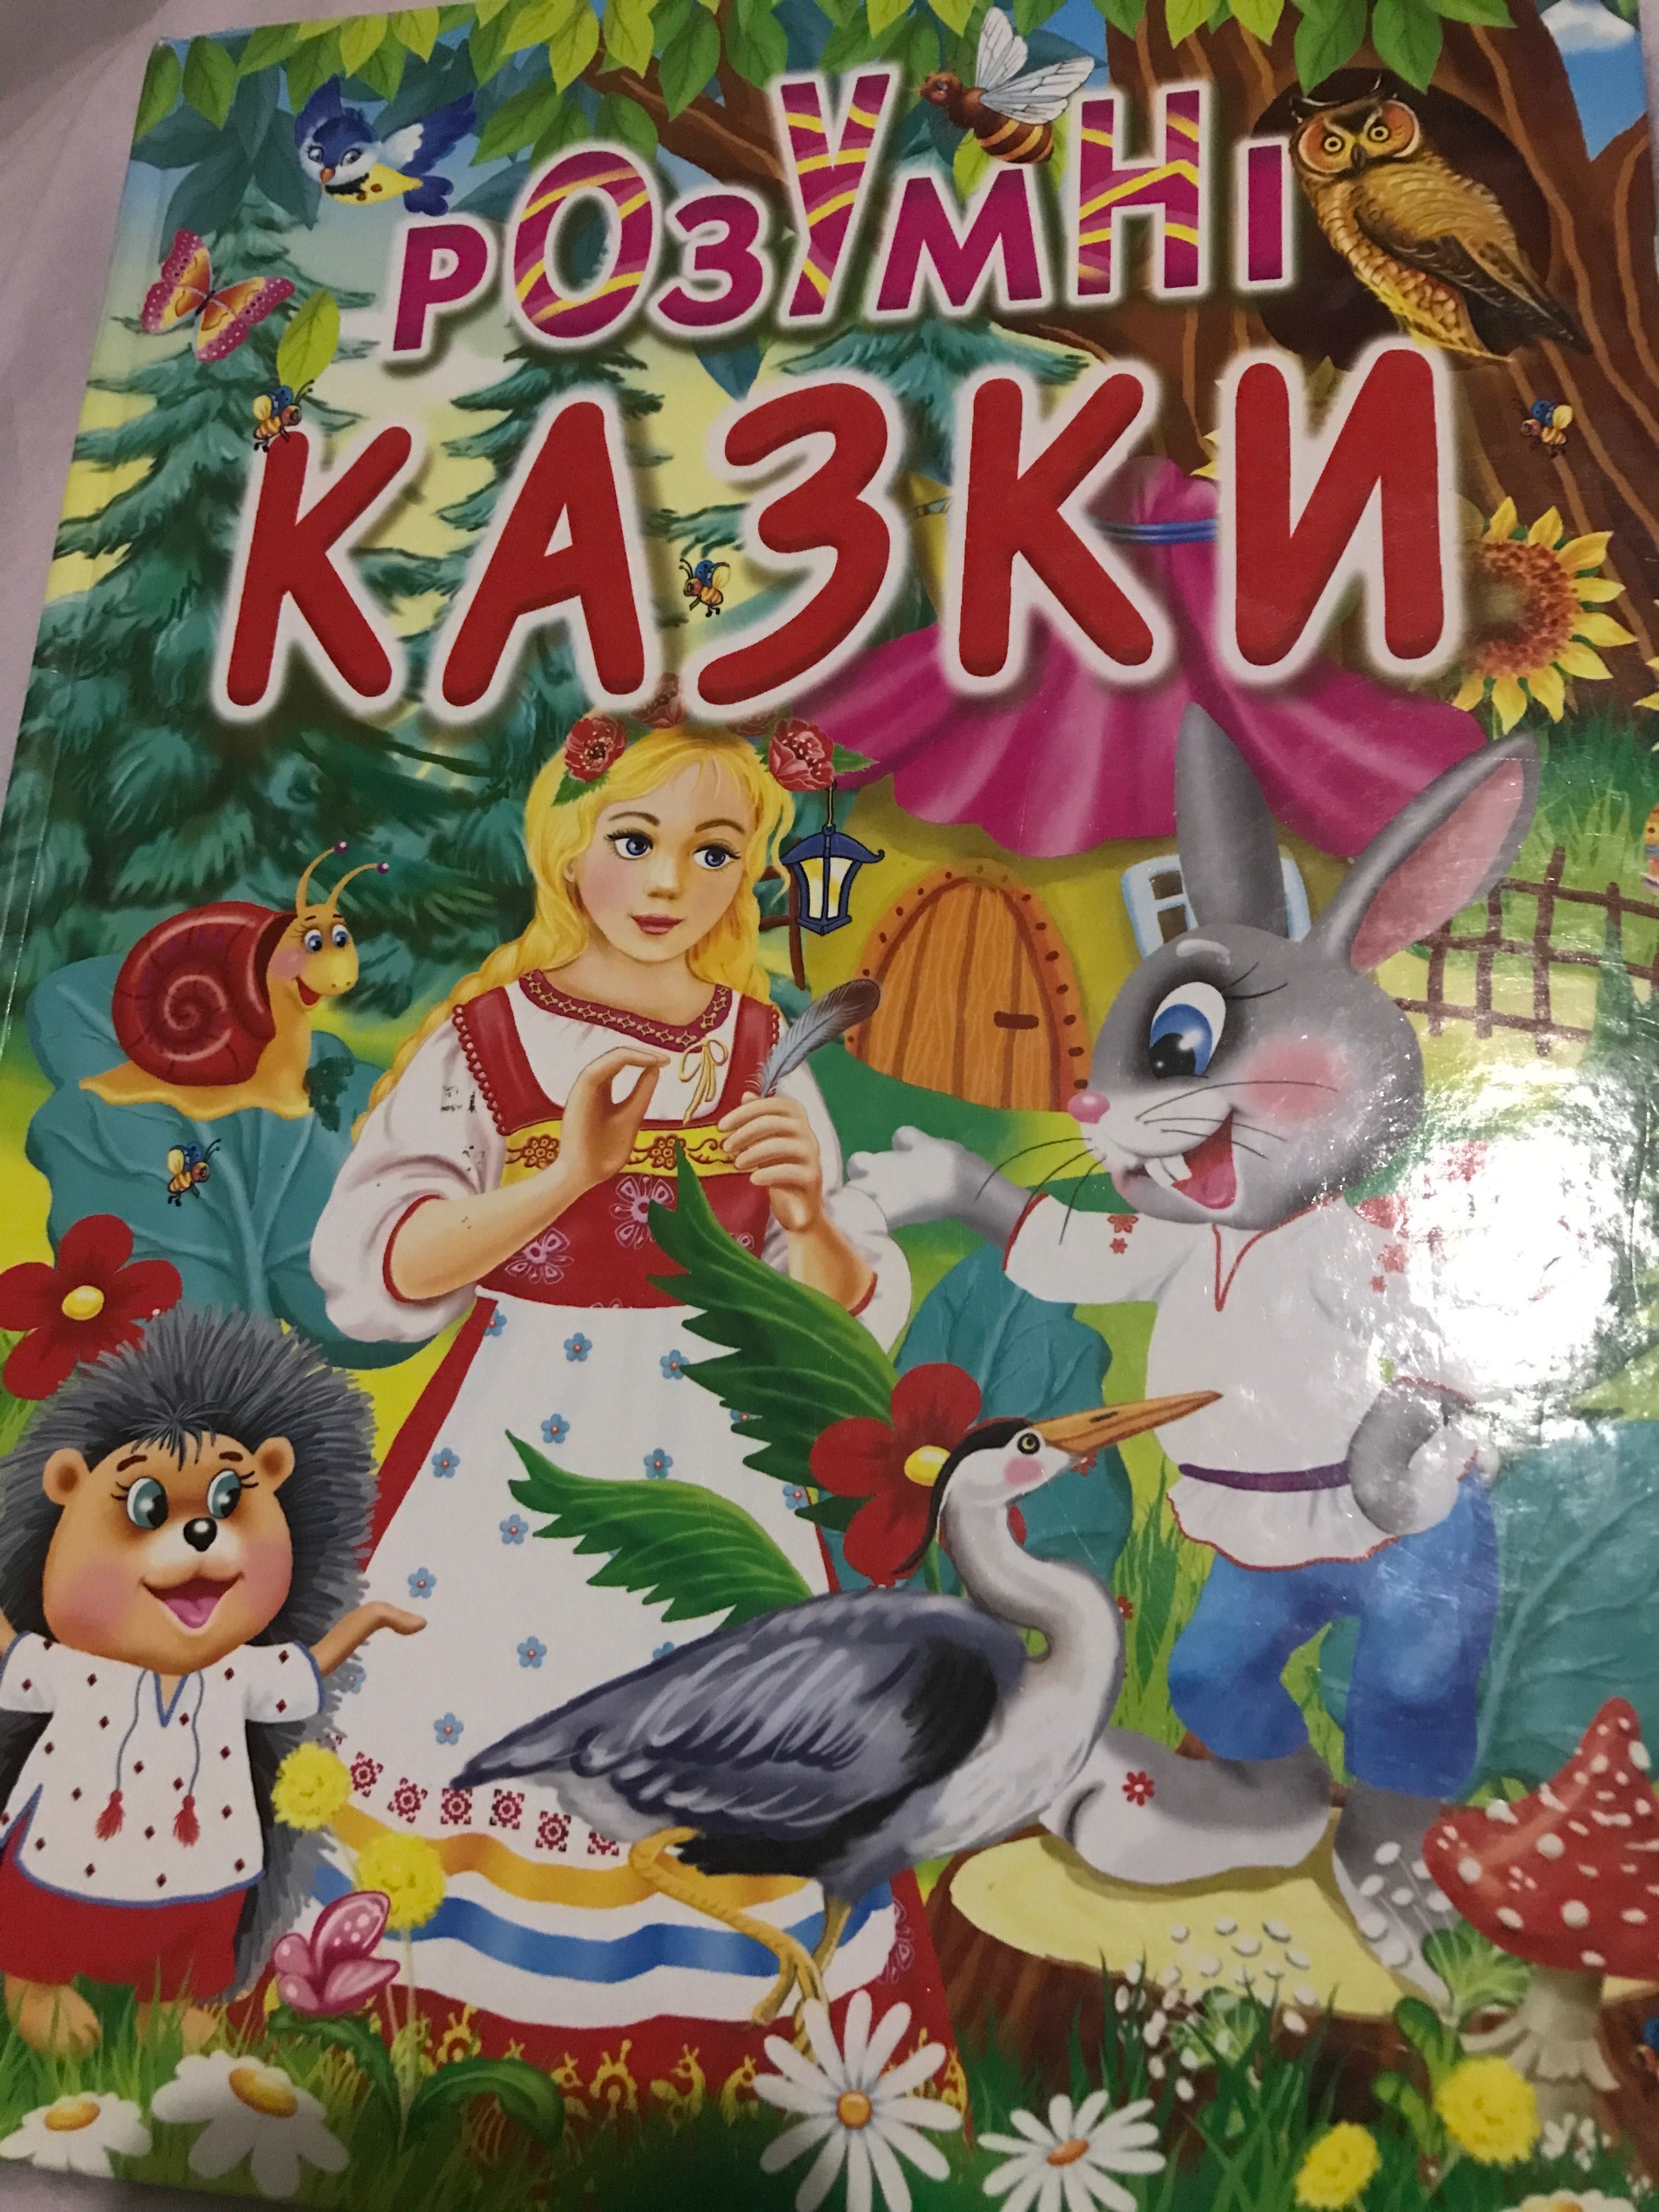 Дитячі книги для дошкільнят